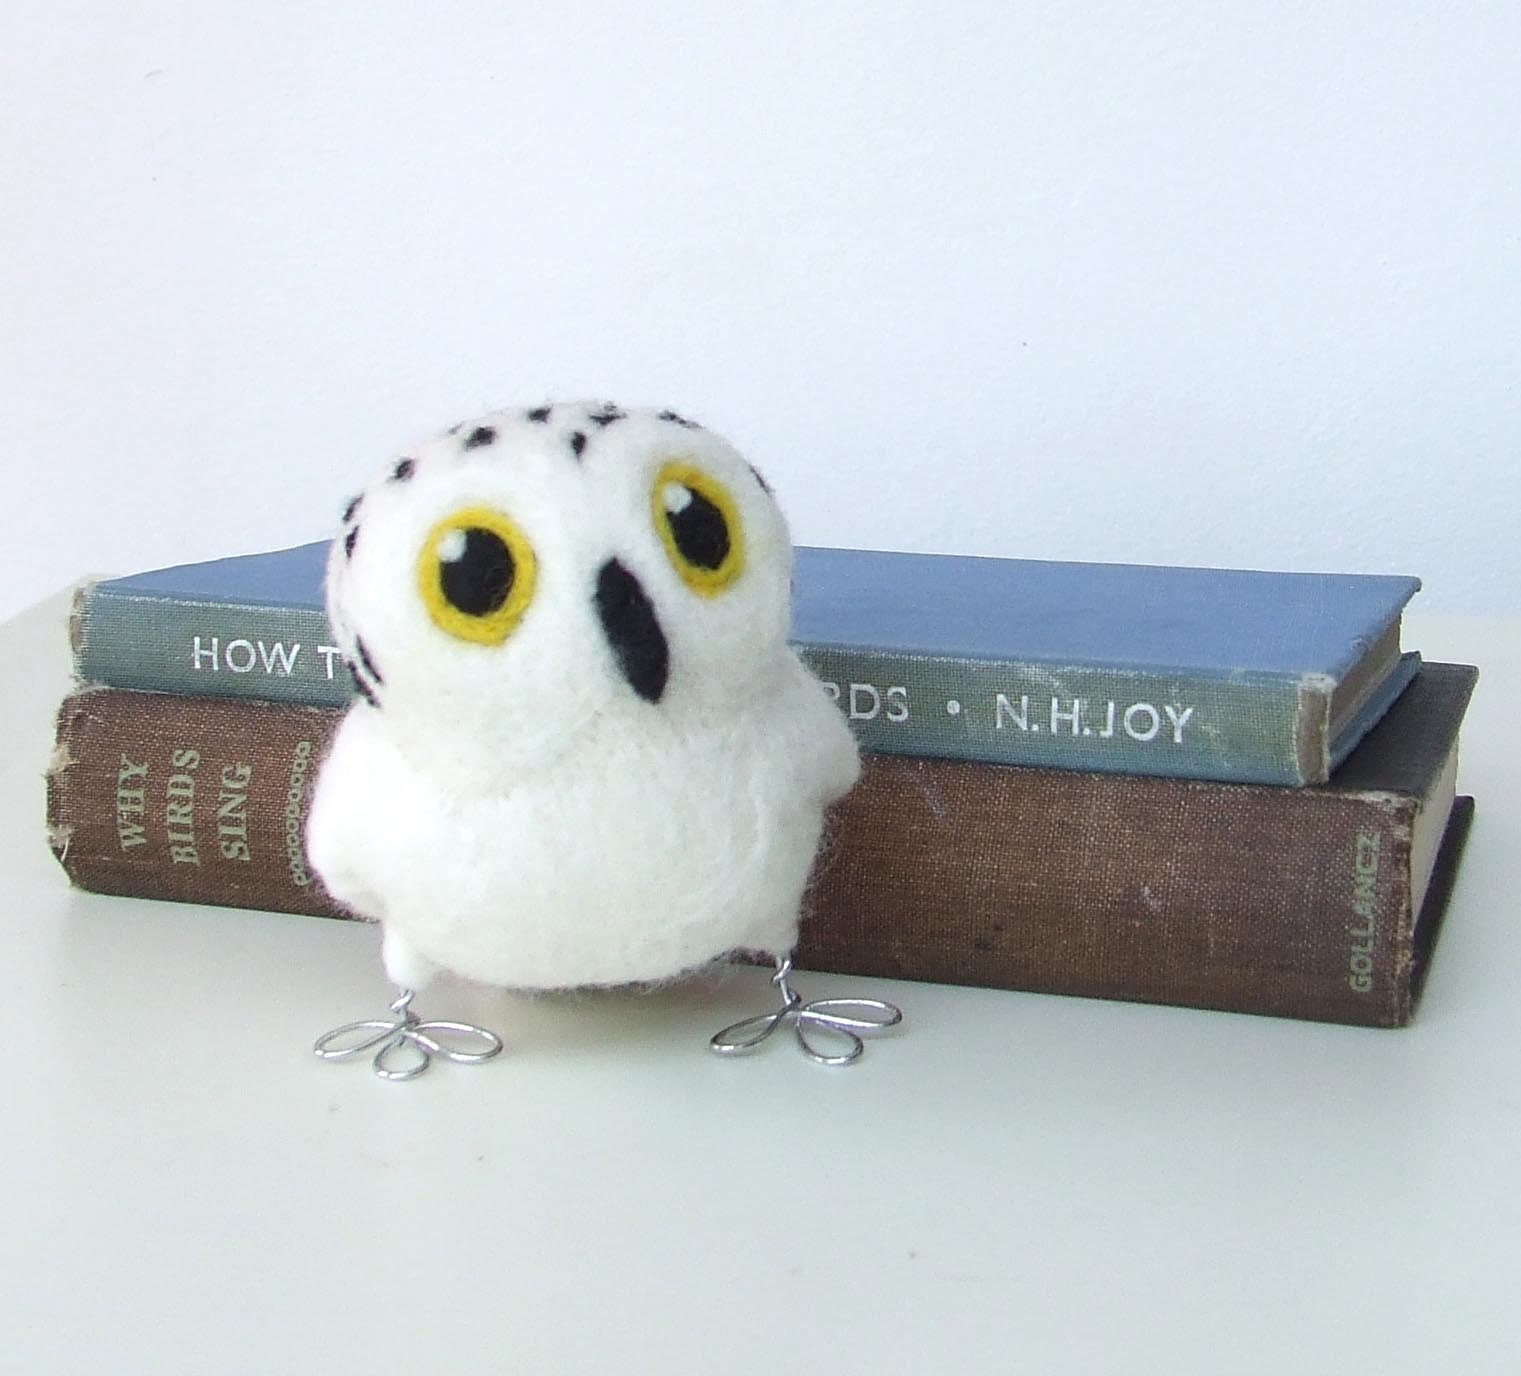 Tweet Hoot Little Snowy Owl in